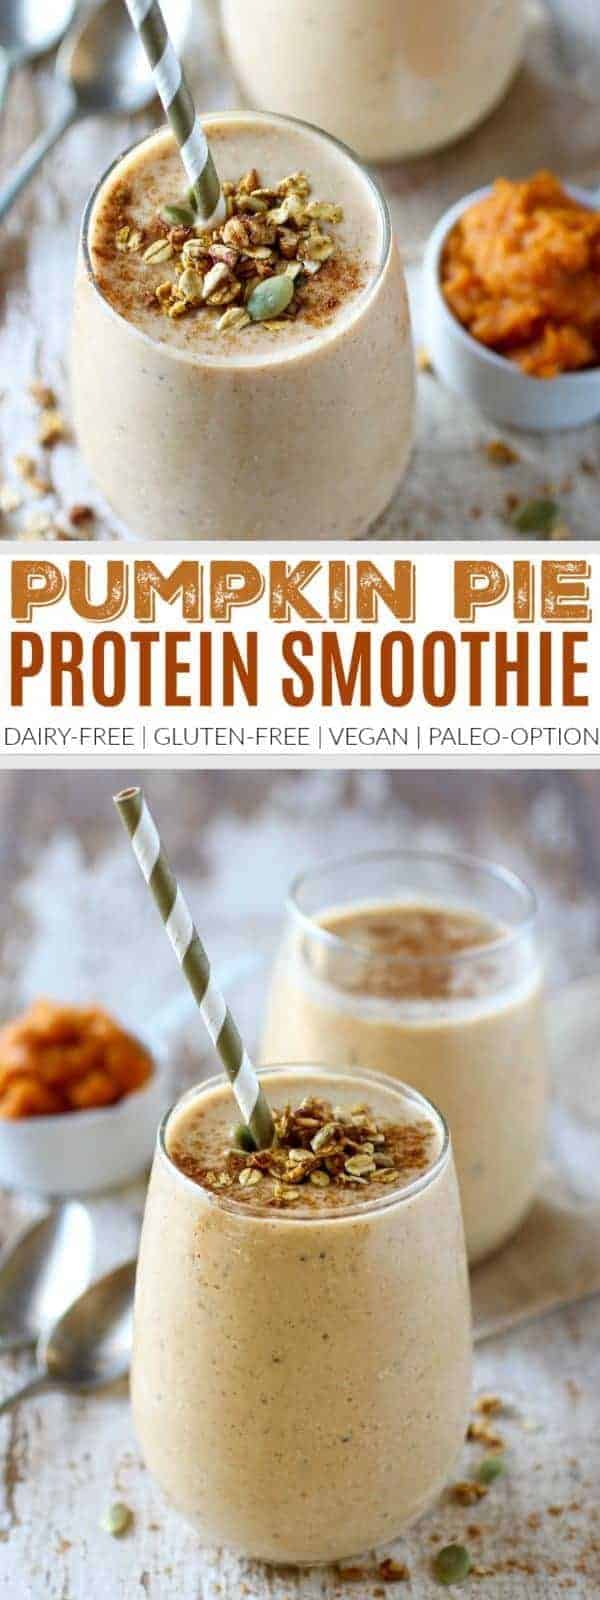 Pinterest image for Pumpkin Pie Protein Smoothie